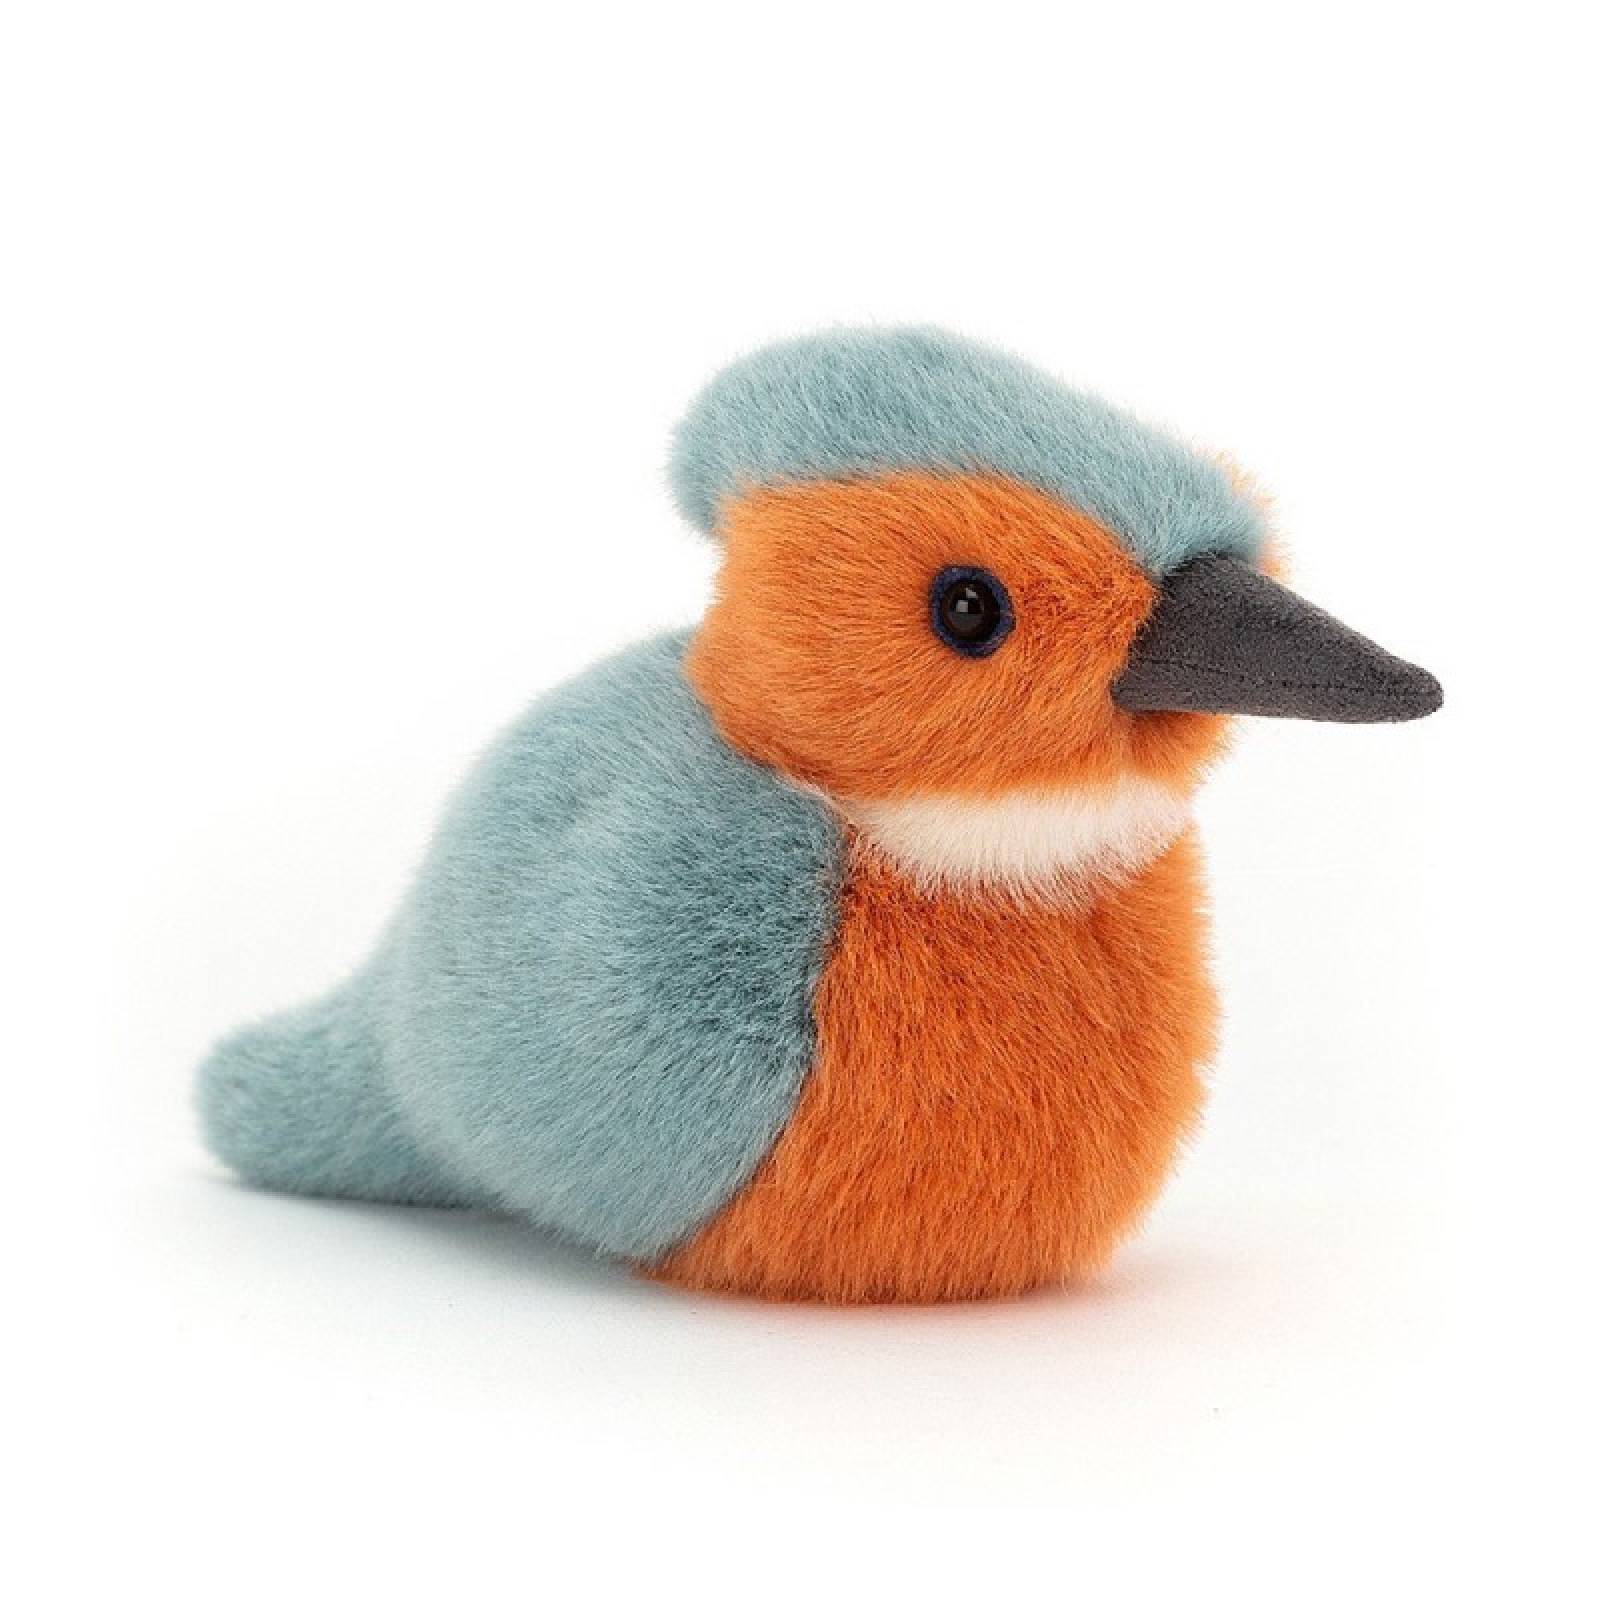 Birdling Kingfisher Bird Soft Toy By Jellycat